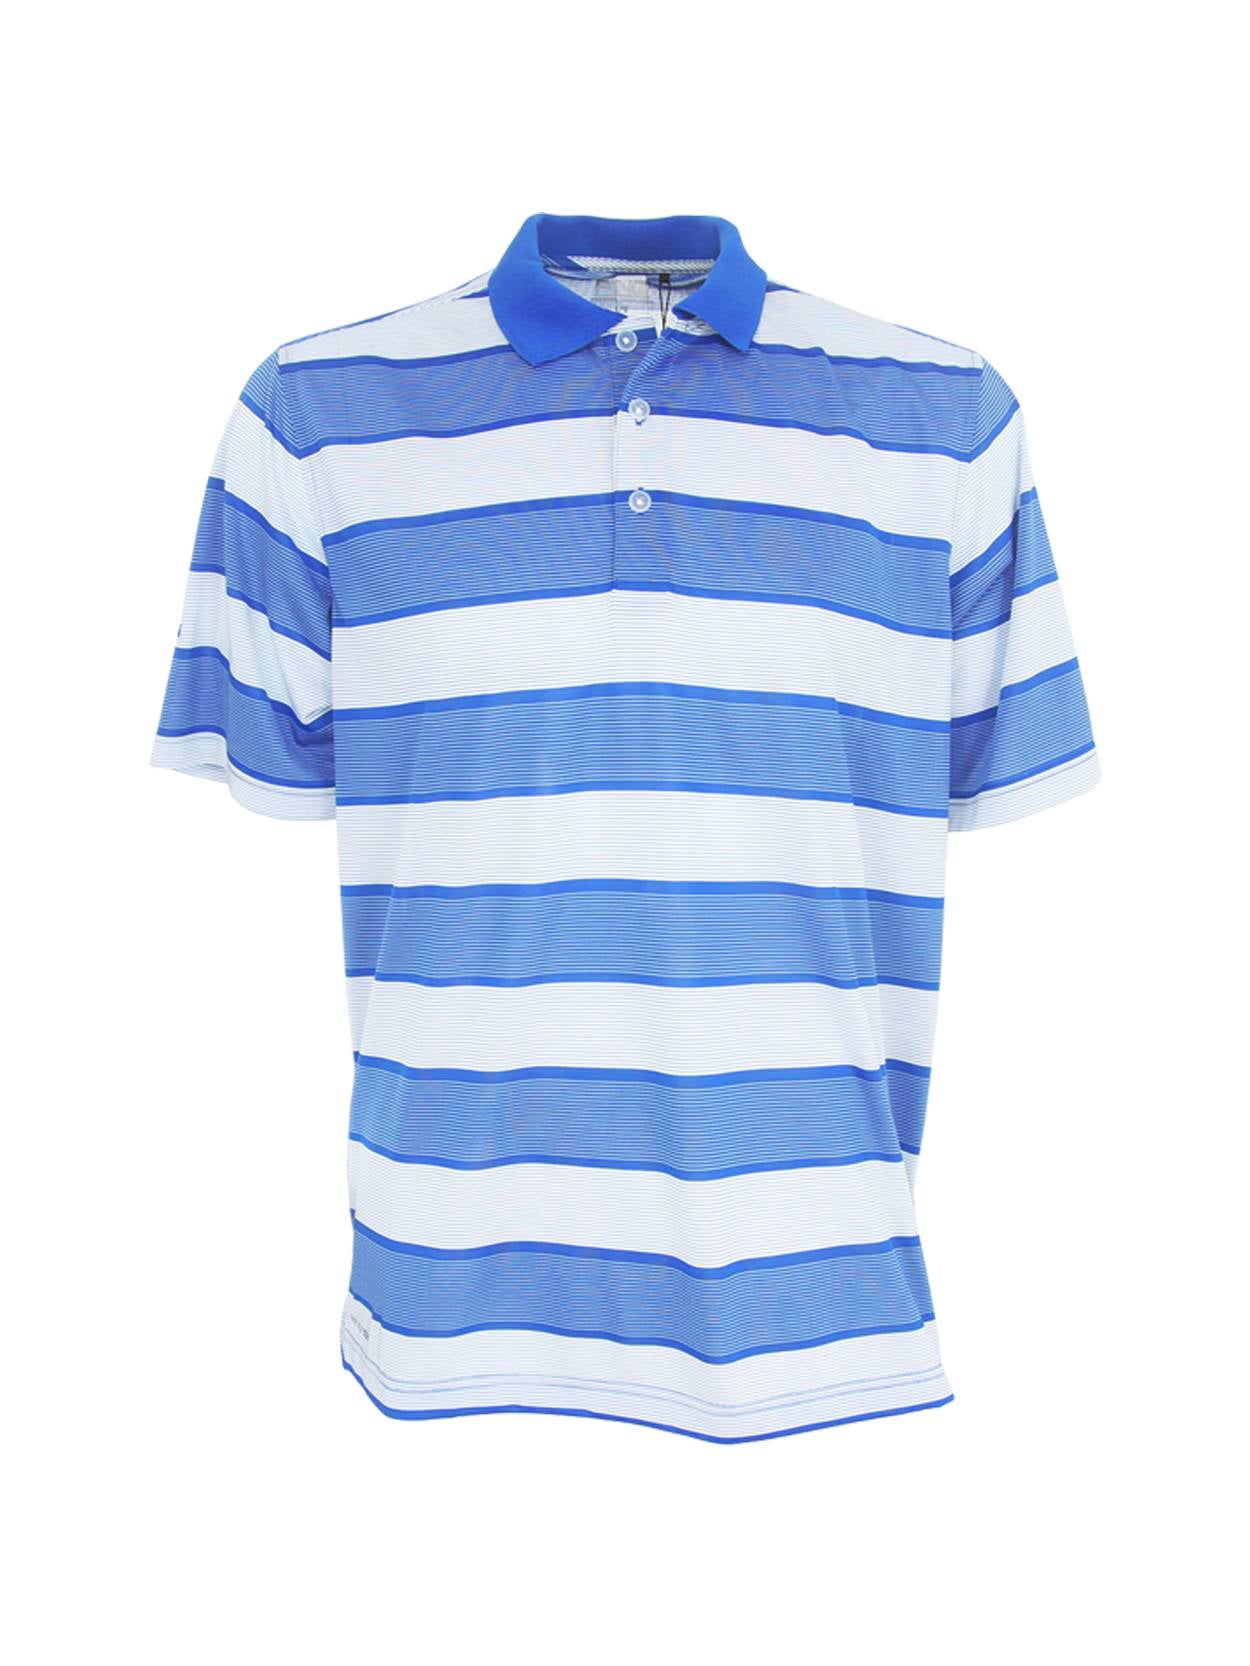 PING Golf Men's Dance Floor Sensorcool Striped Polo Shirt, Small Cobalt ...